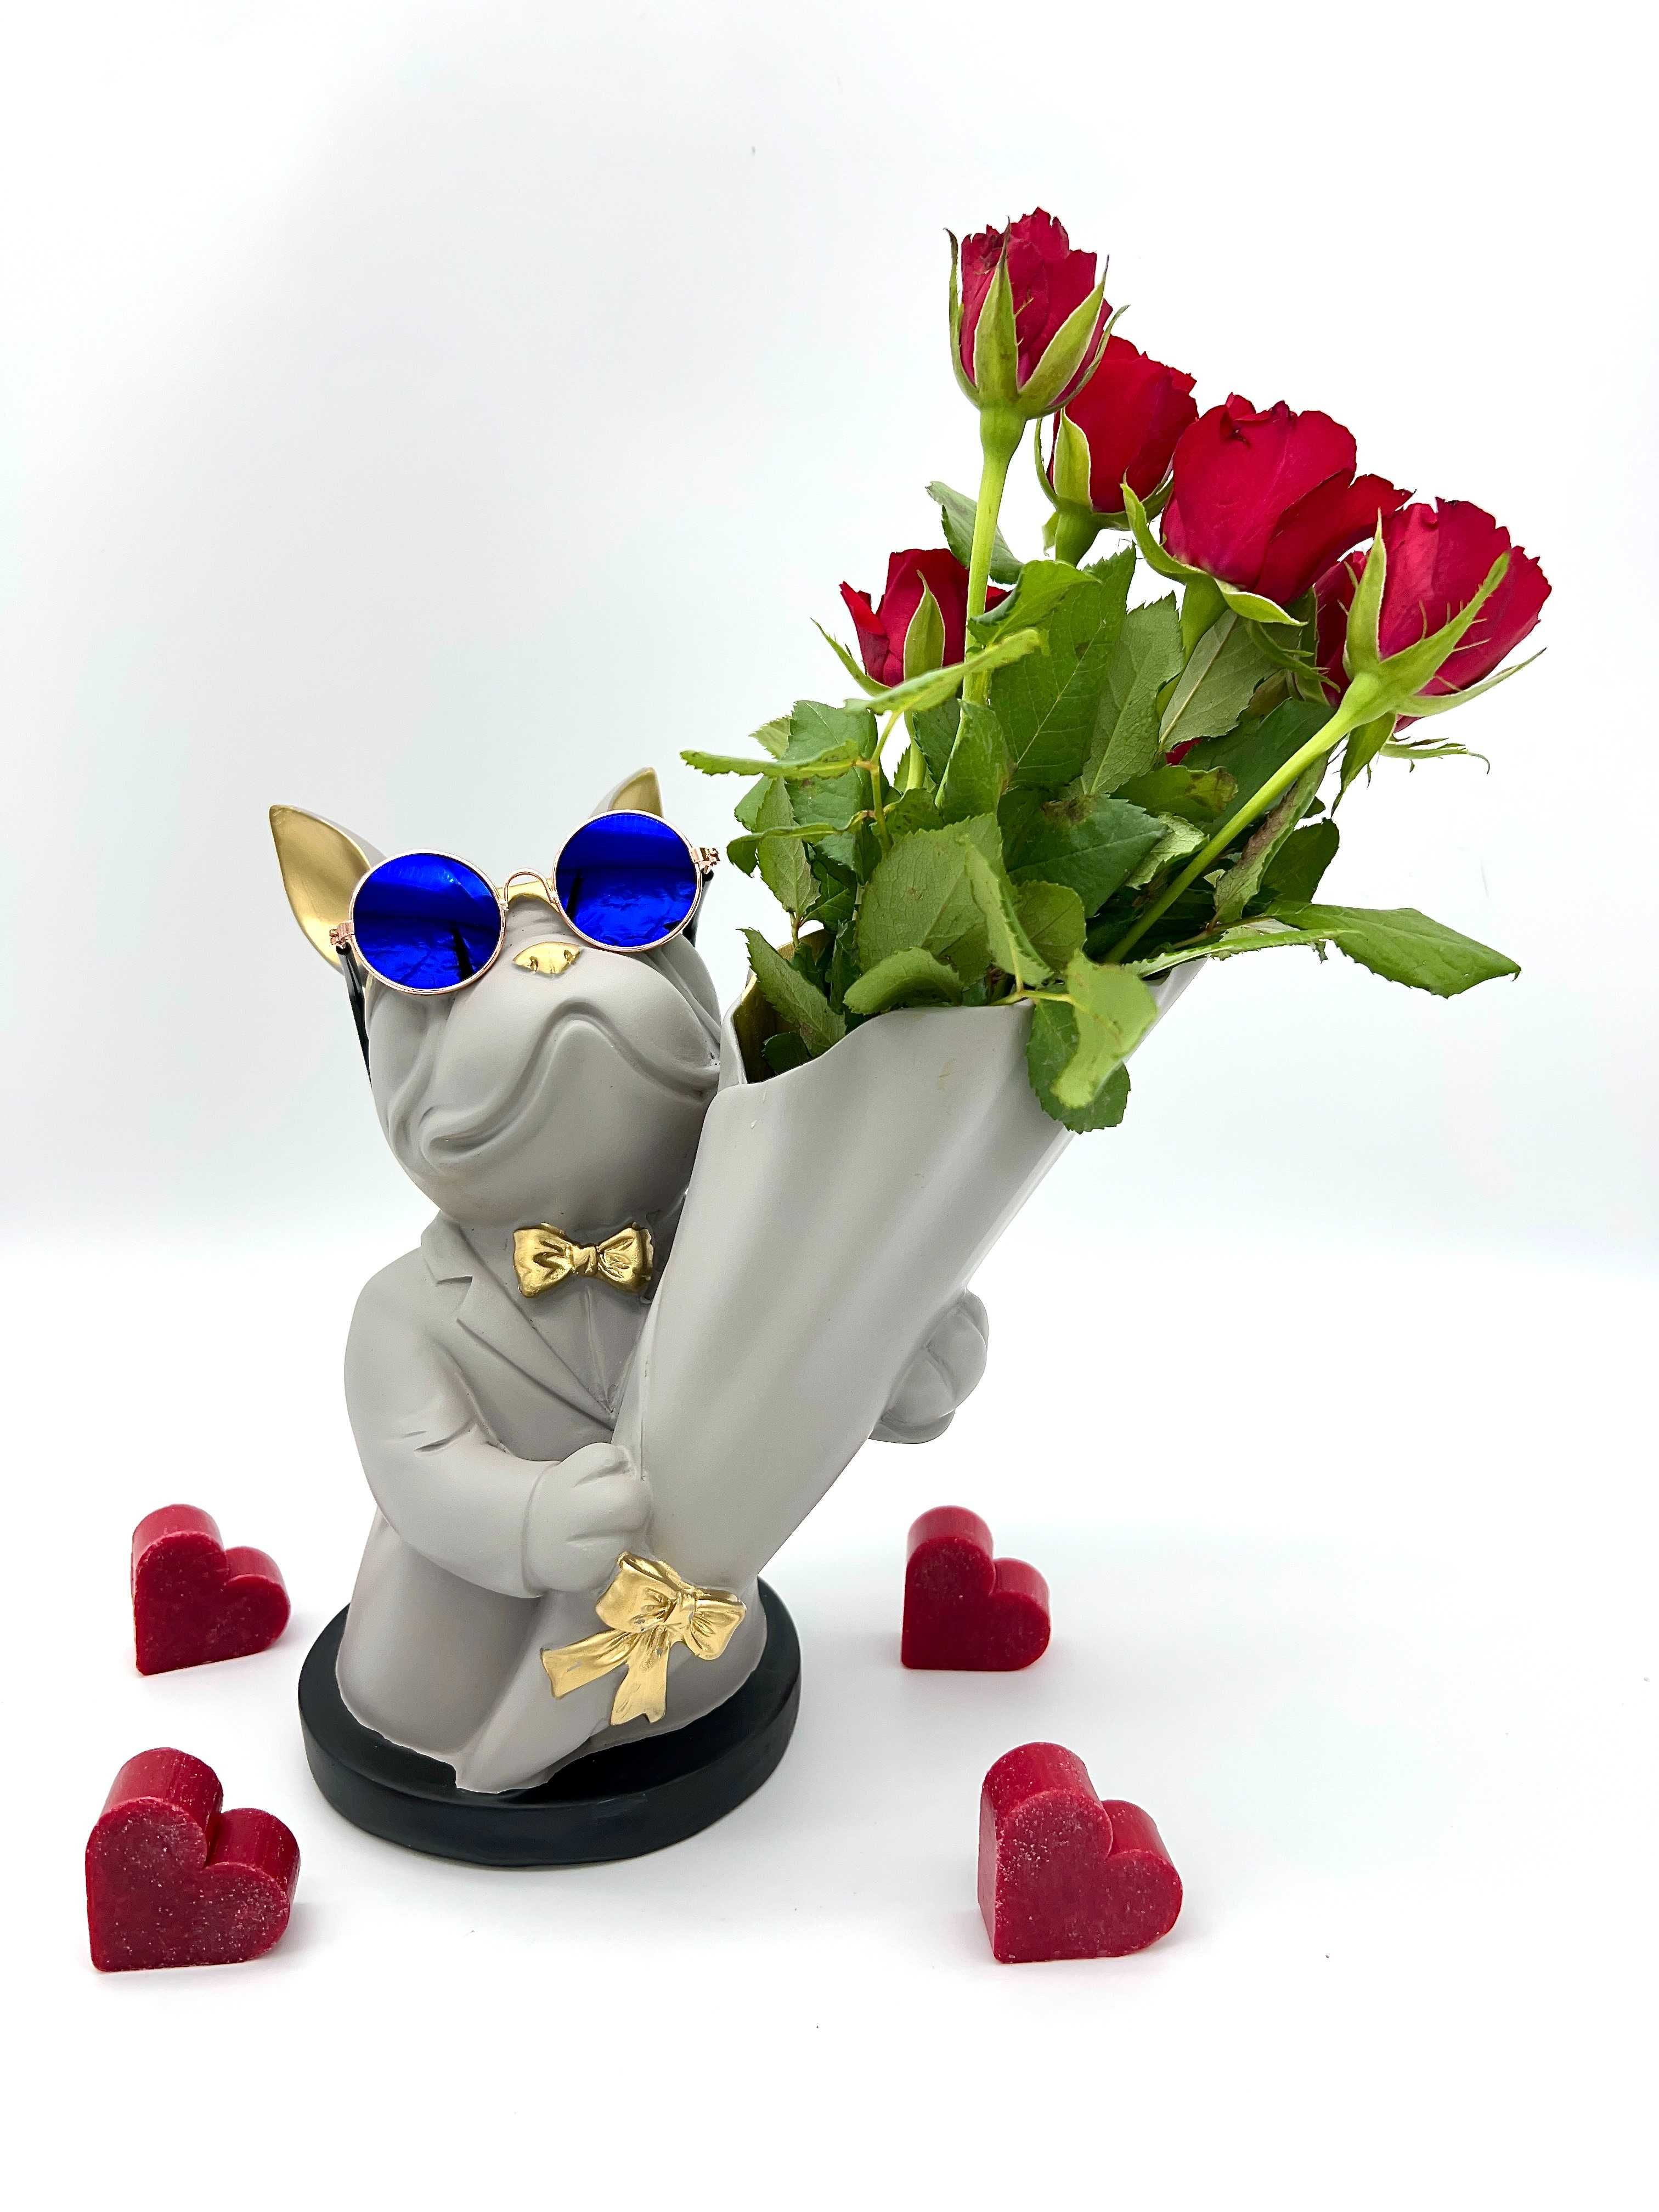 Wazon na kwiaty Buldog szary figurka na prezent BM2143 PROMOCJA